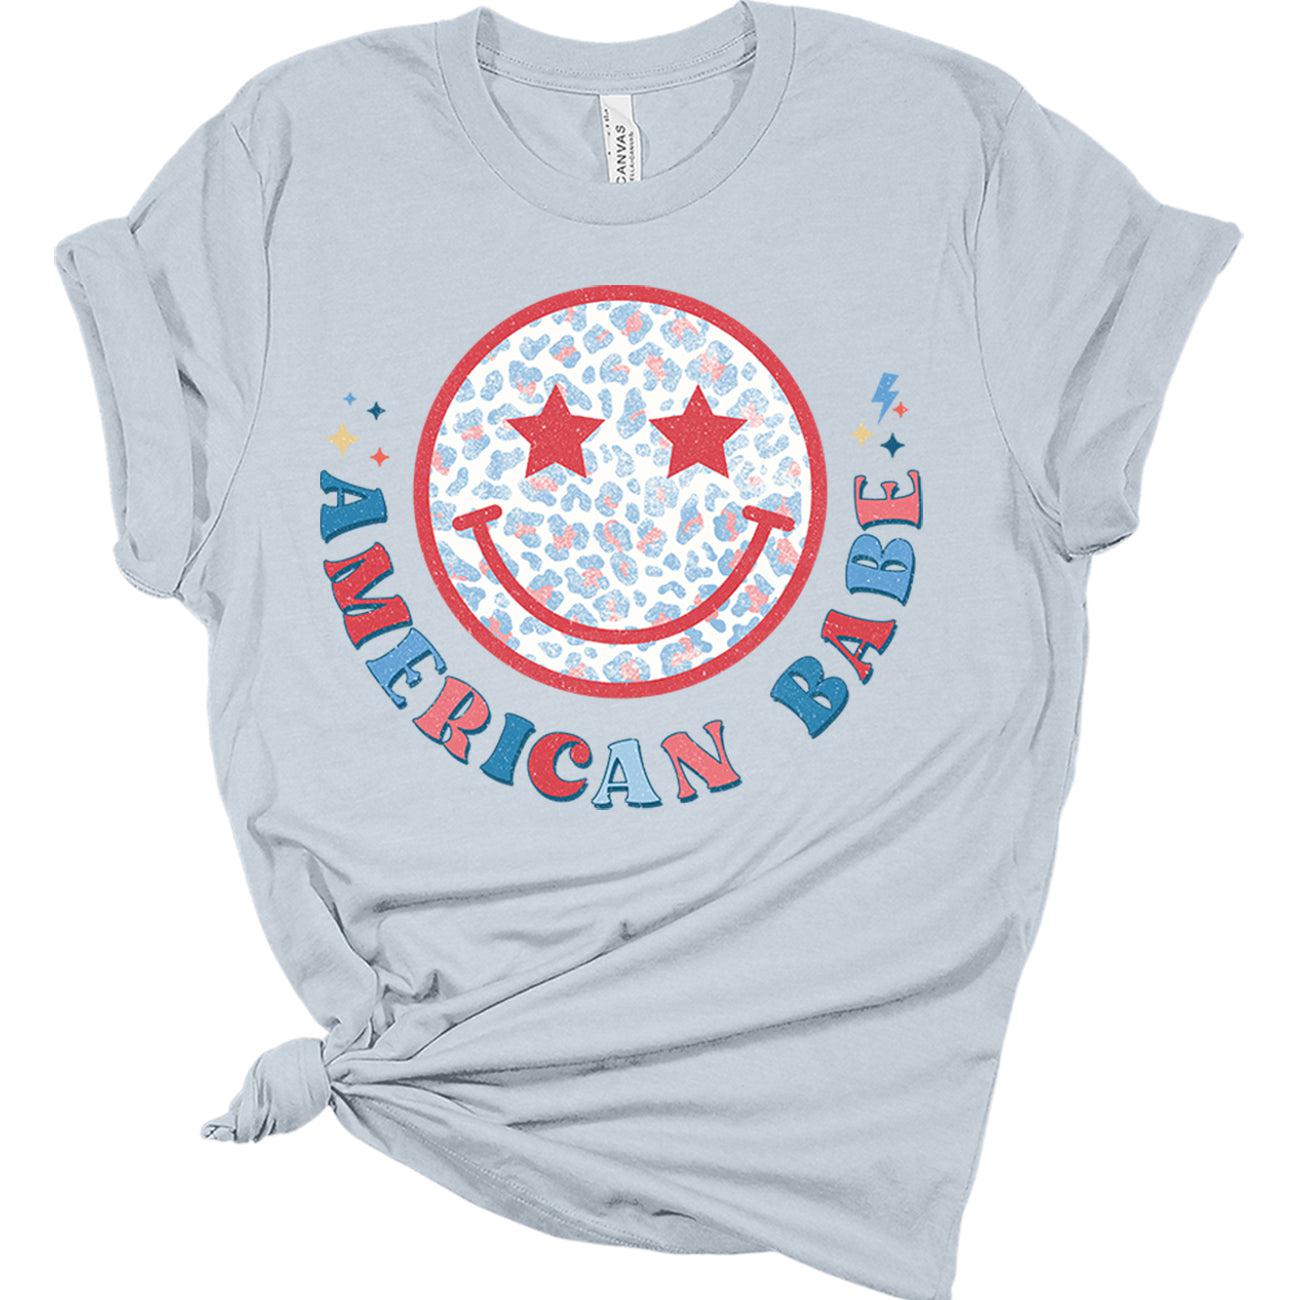 Womens 4th of July Shirts American Flag Patriotic Tshirts USA Short Sleeve Retro Graphic Tops